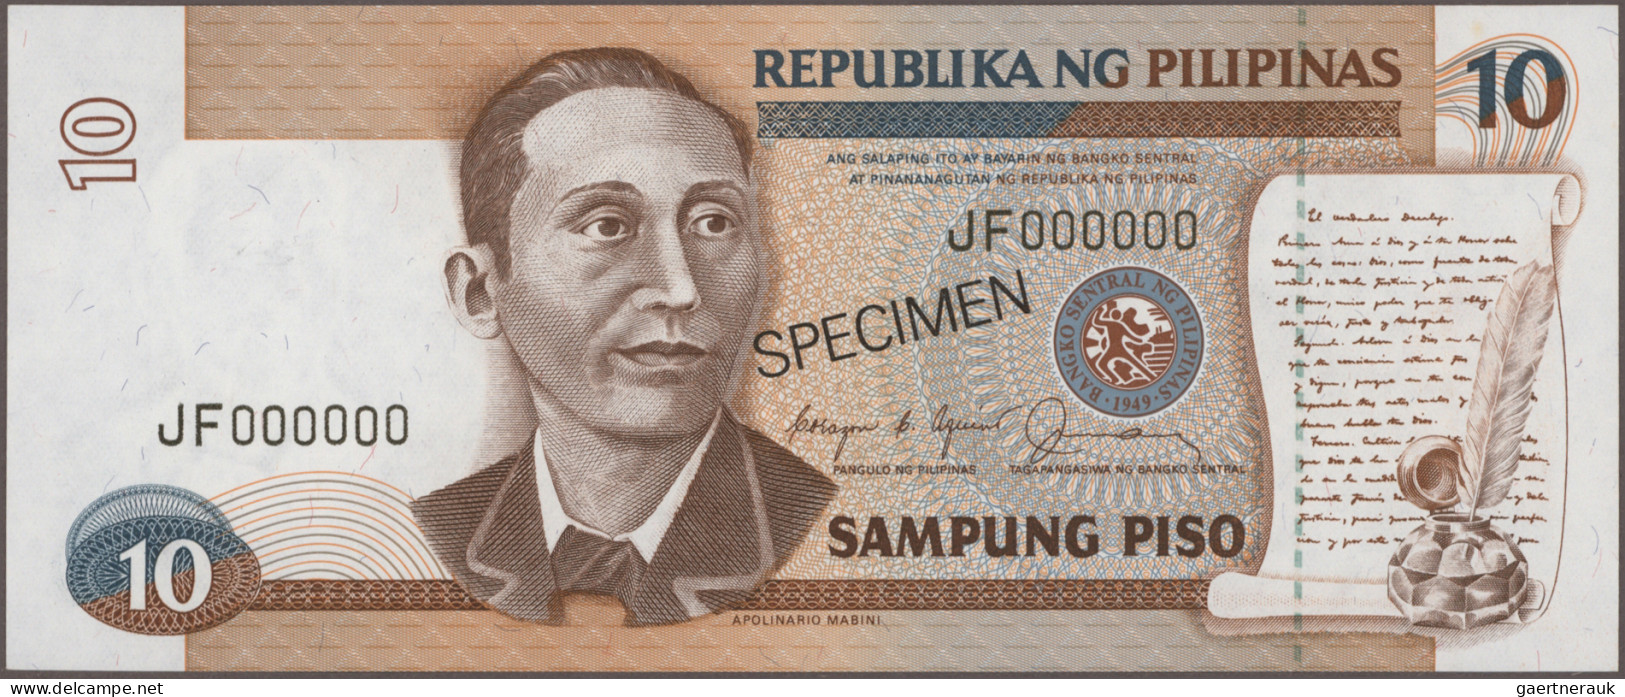 Philippines: Bangko Sentral Republika ng Pilipinas, giant lot with 117 banknotes